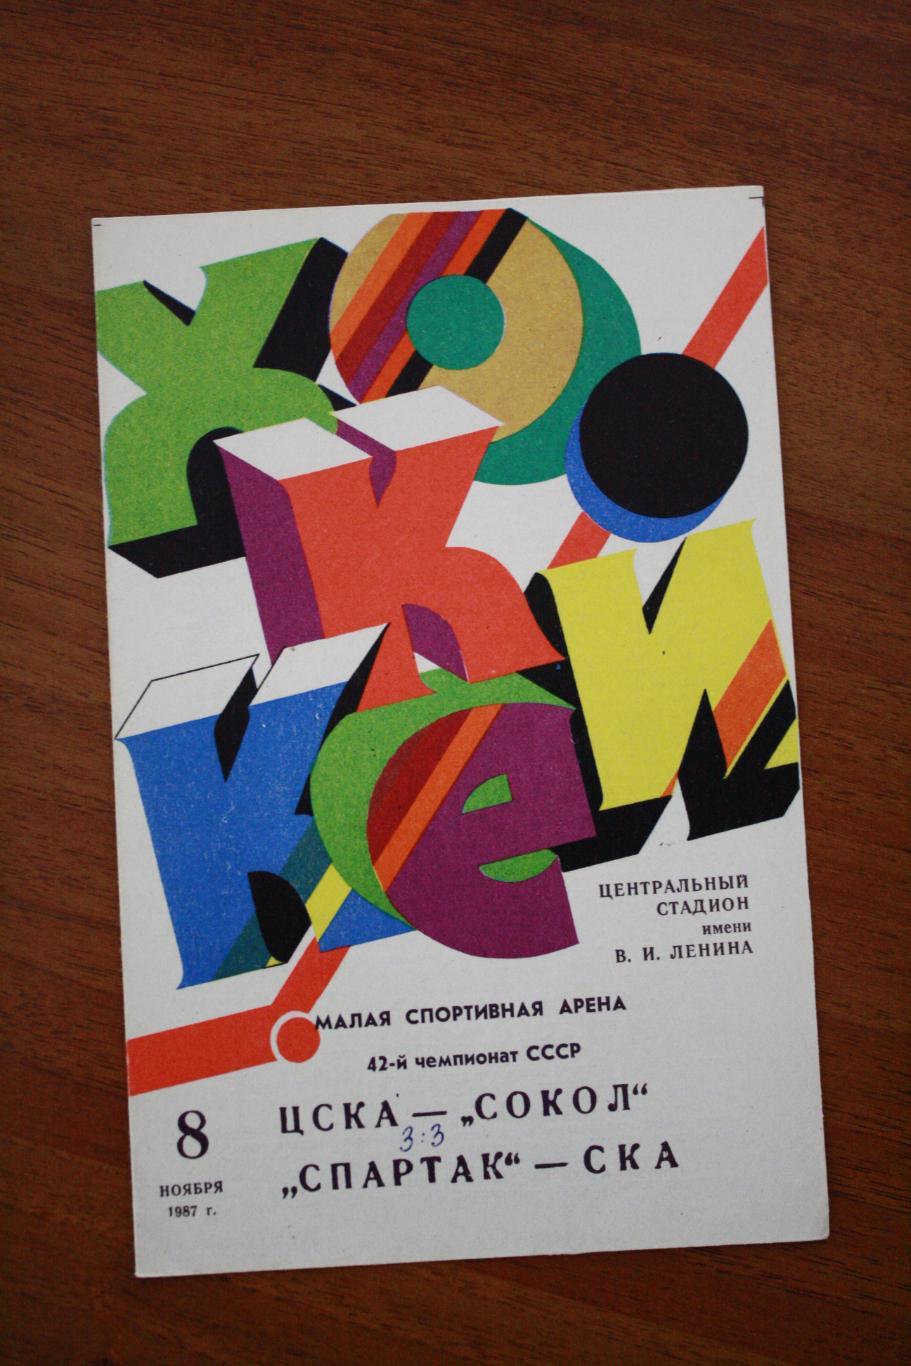 ЦСКА - Сокол, Спартак Москва - СКА - 08.11.1987 год